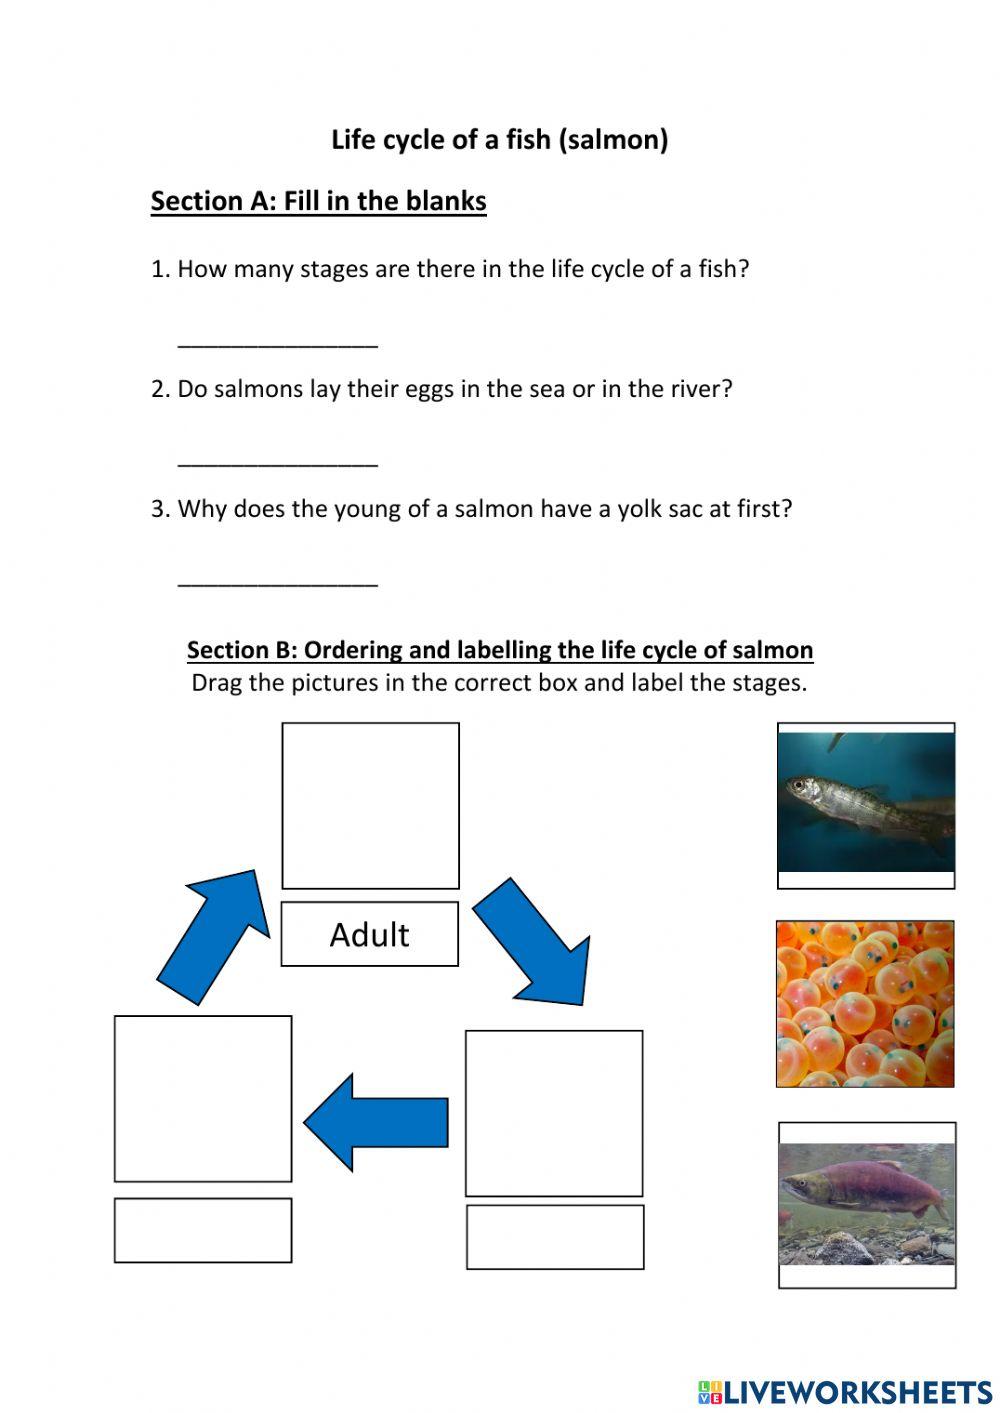 Life cycle of fish (no checking answers)